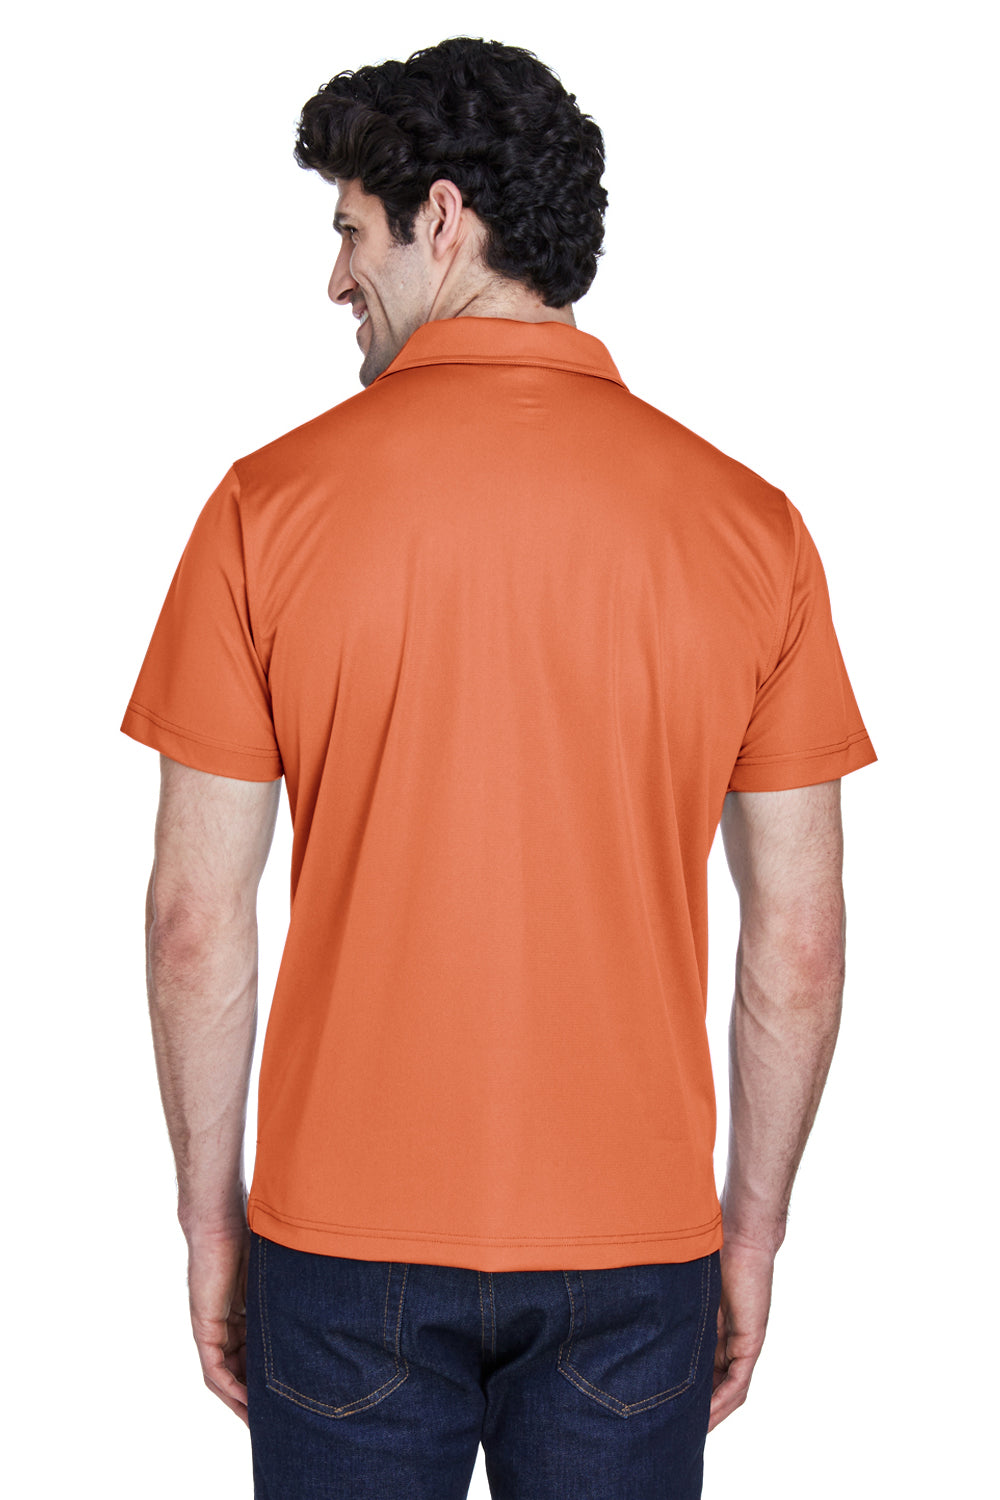 Team 365 TT21 Mens Command Performance Moisture Wicking Short Sleeve Polo Shirt Burnt Orange Back